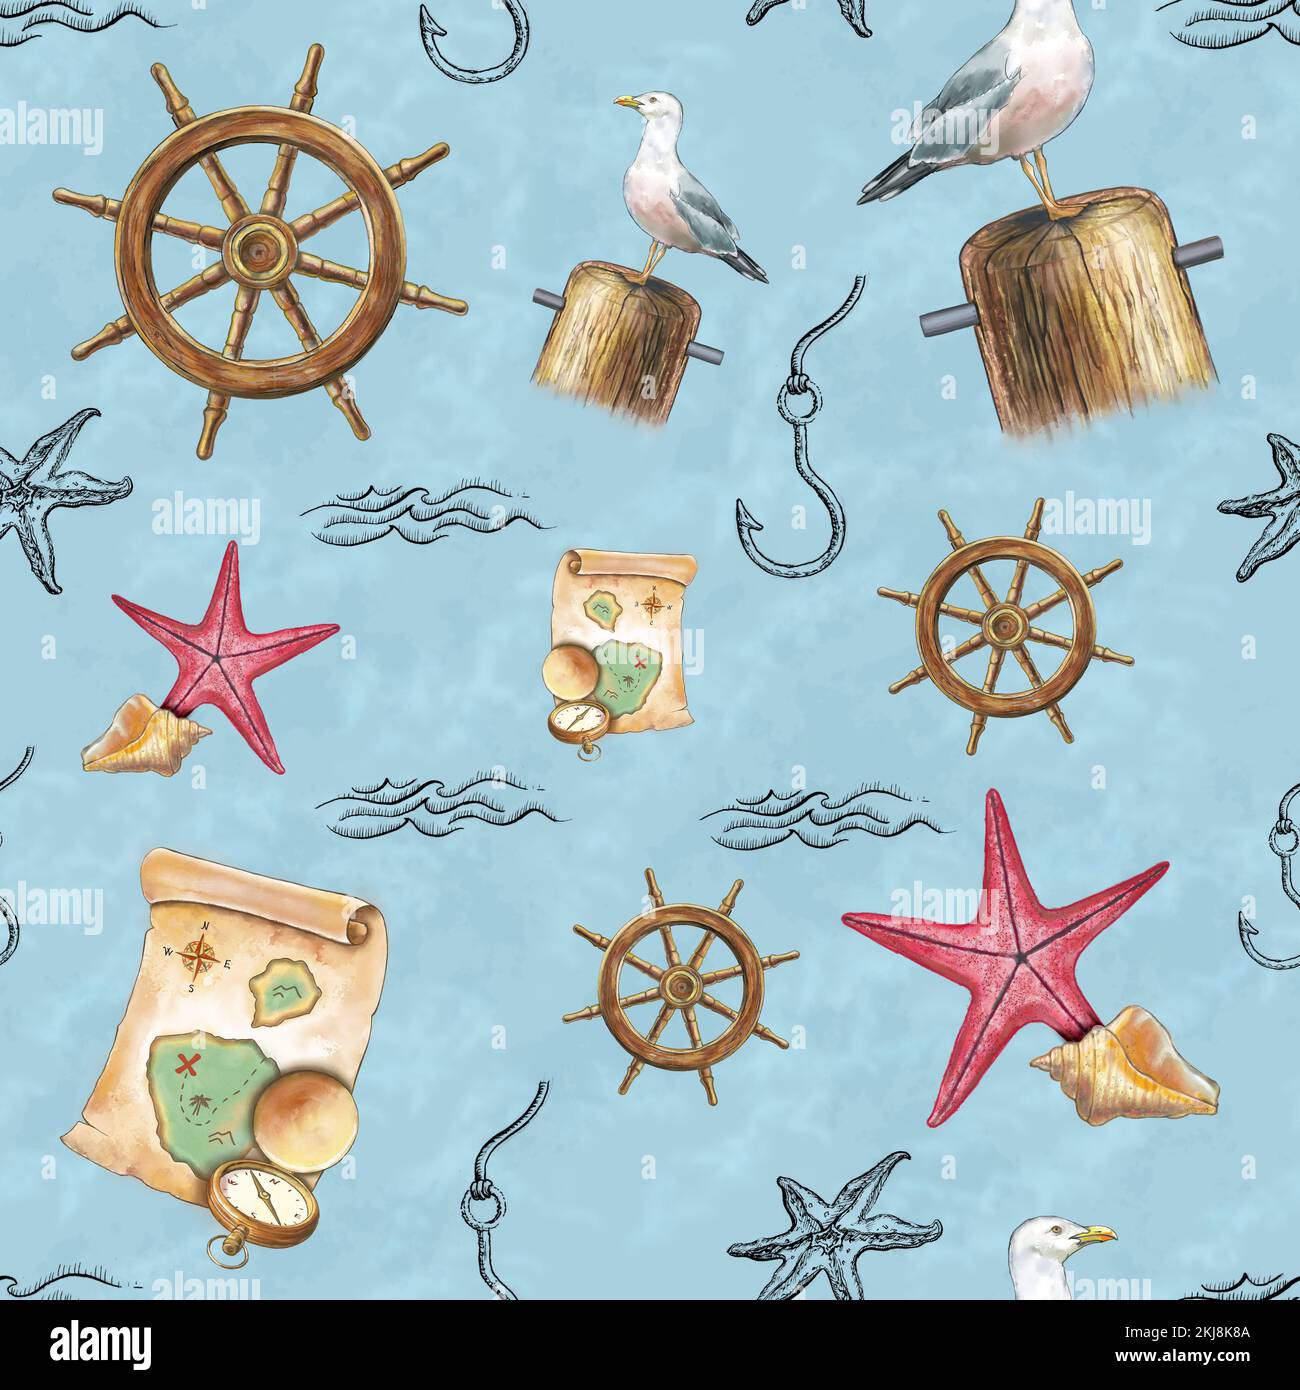 Patrón de temática náutica con elementos dibujados a mano, como gaviota, estrellas de mar, mapa y brújula antiguos, rueda de timón y otros objetos decorativos. Digita Foto de stock